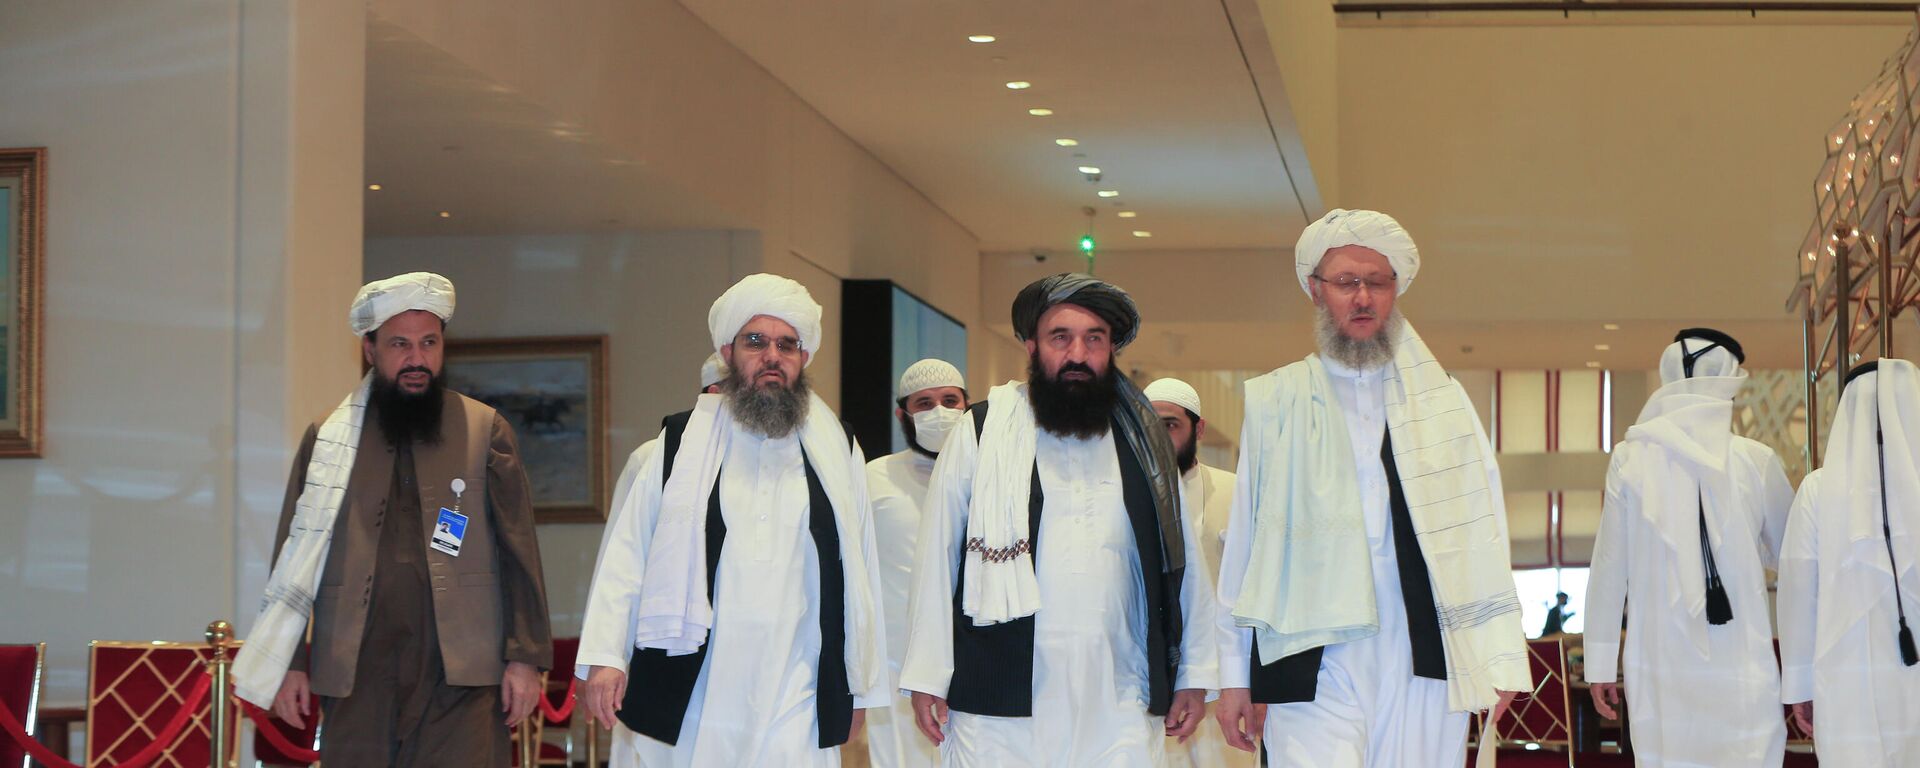 Una delegación de los talibanes - Sputnik Mundo, 1920, 16.10.2021